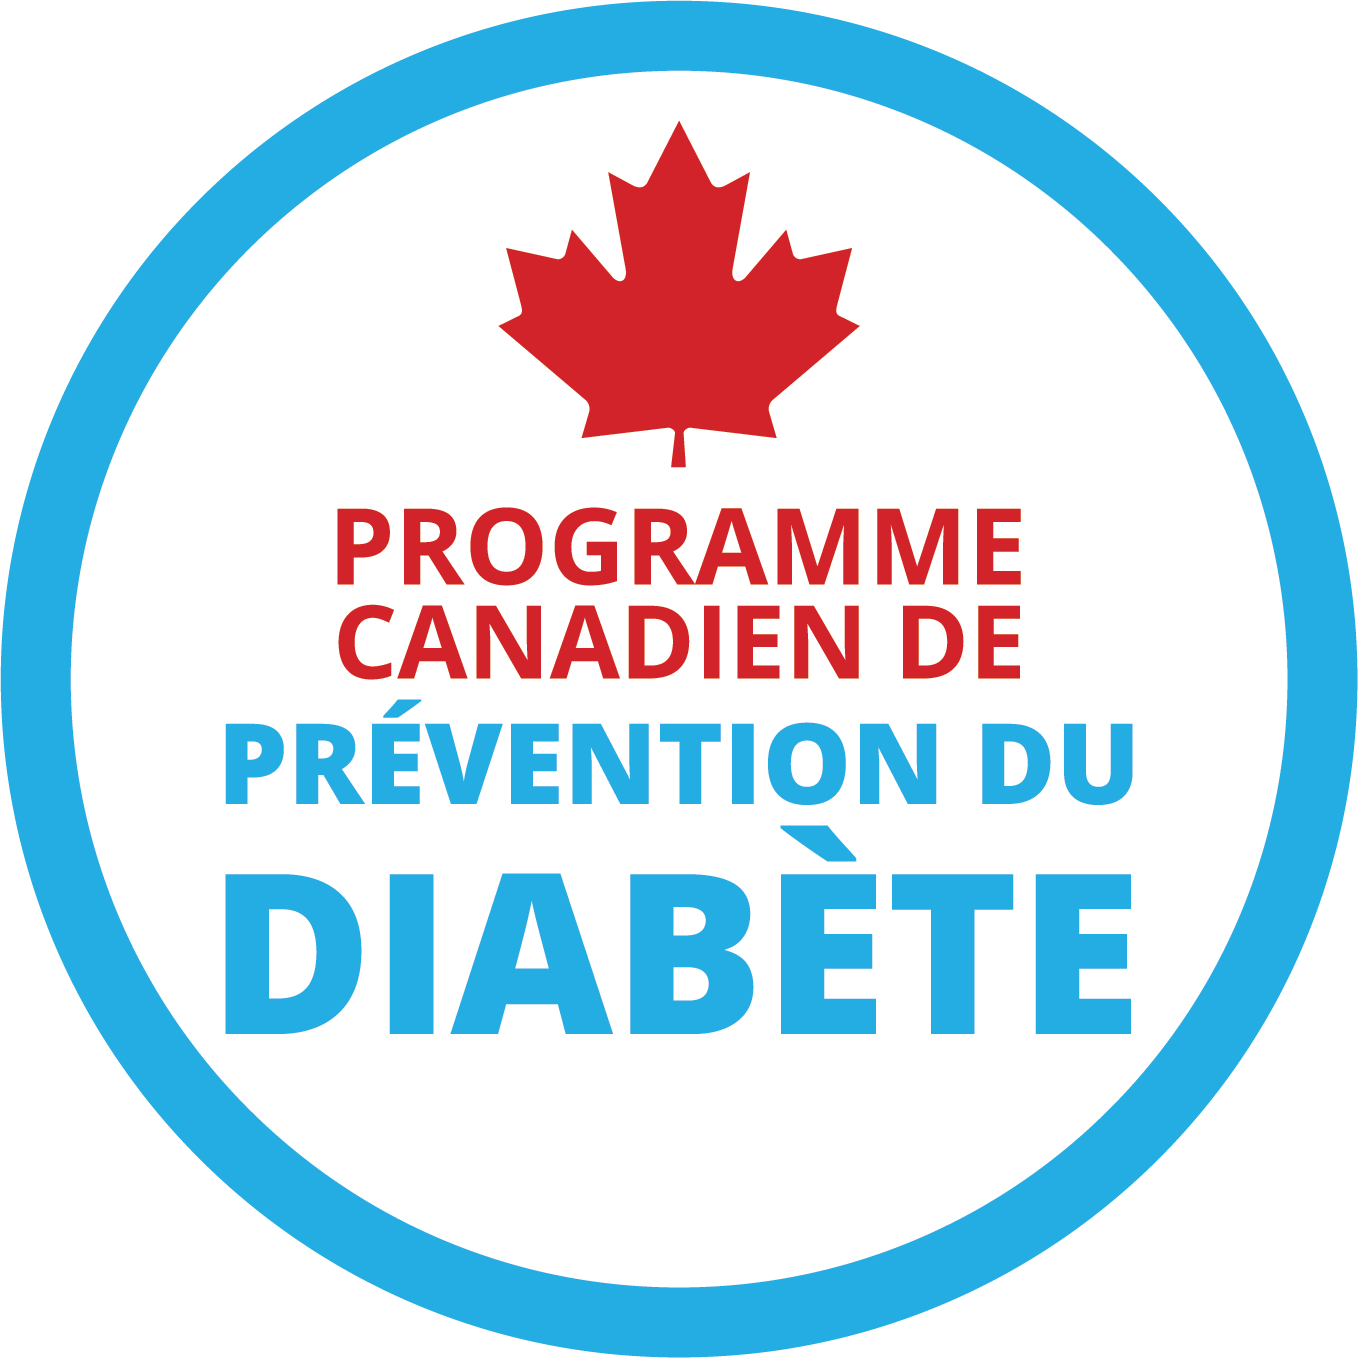 Programme canadien de prévention du diabète